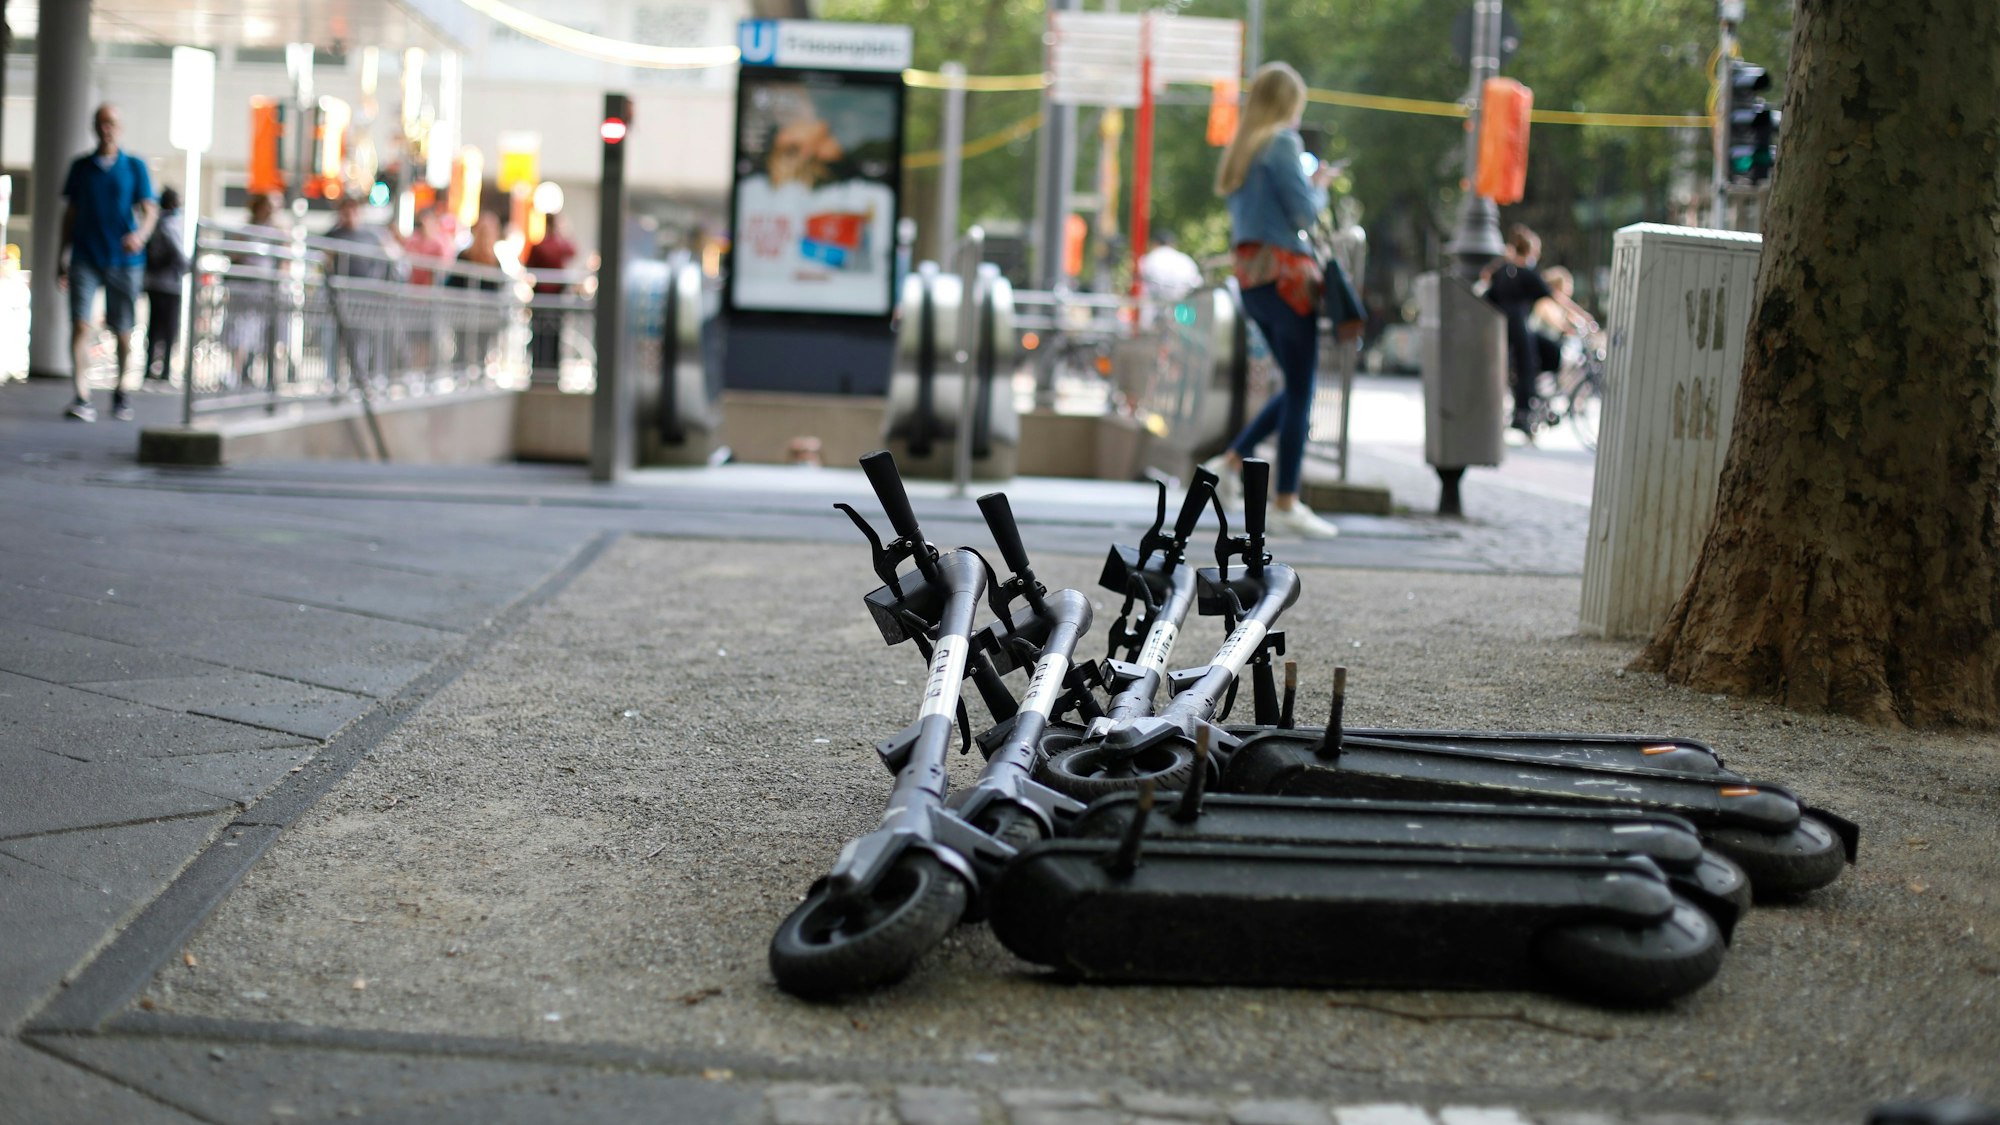 Abgestellte E-Scooter des Anbieters Bird liegen umgekippt neben dem Gehweg in Köln.